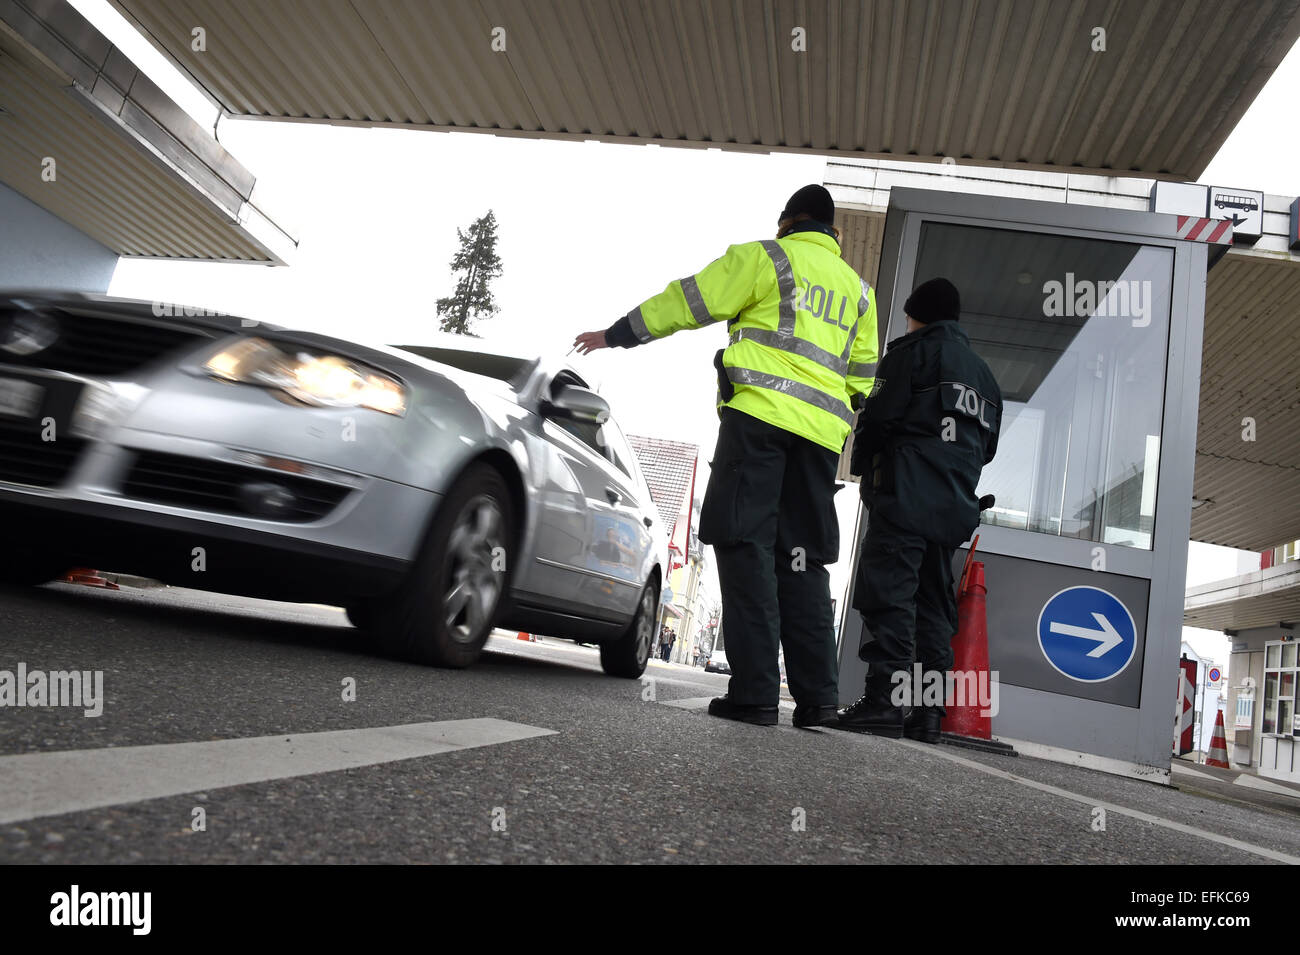 Un funzionario doganale si arresta la macchina di un cittadino svizzero che passa il confine con la Germania a Konstanz, Germania, il 6 febbraio 2015. Foto: FELIX KAESTLE/dpa Foto Stock